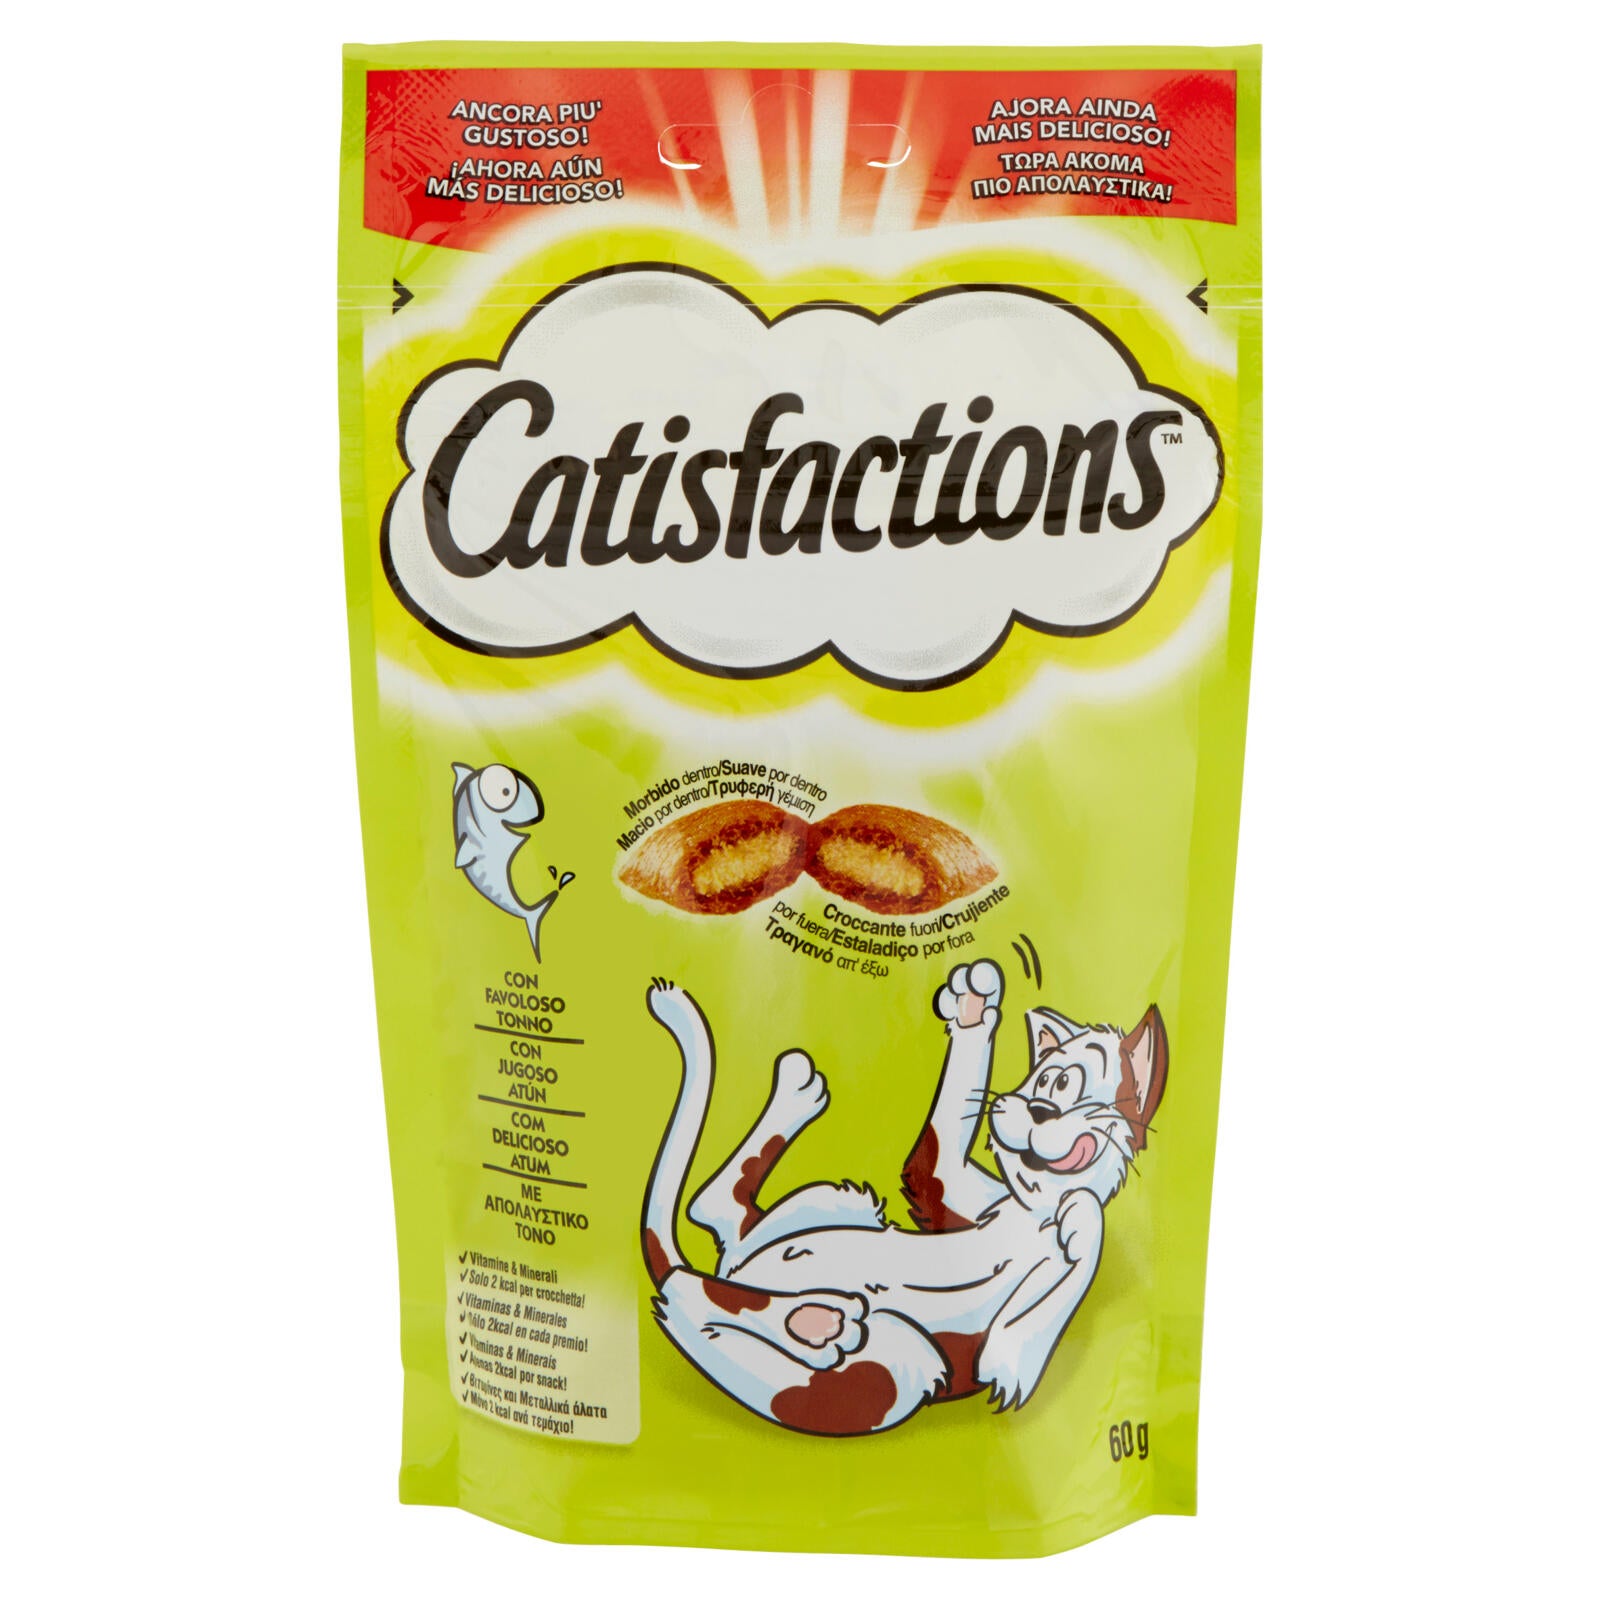 Catisfactions Snack Gatto con Favoloso Tonno 60 g ->